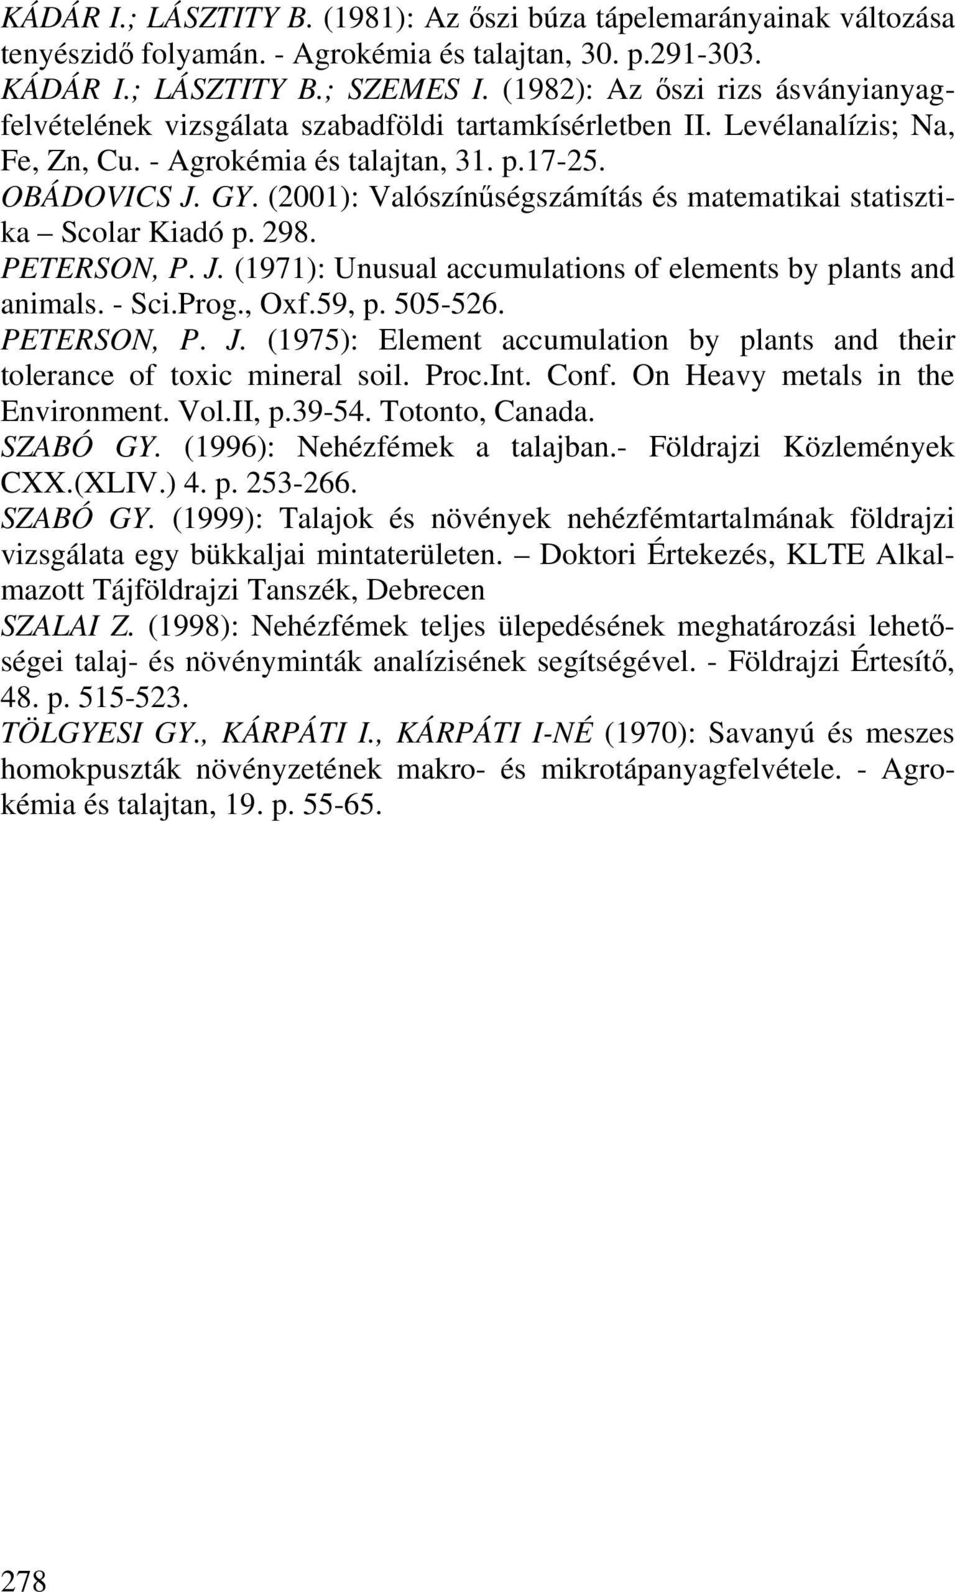 (2001): Valószínűségszámítás és matematikai statisztika Scolar Kiadó p. 298. PETERSON, P. J. (1971): Unusual accumulations of elements by plants and animals. - Sci.Prog., Oxf.59, p. 505-526.